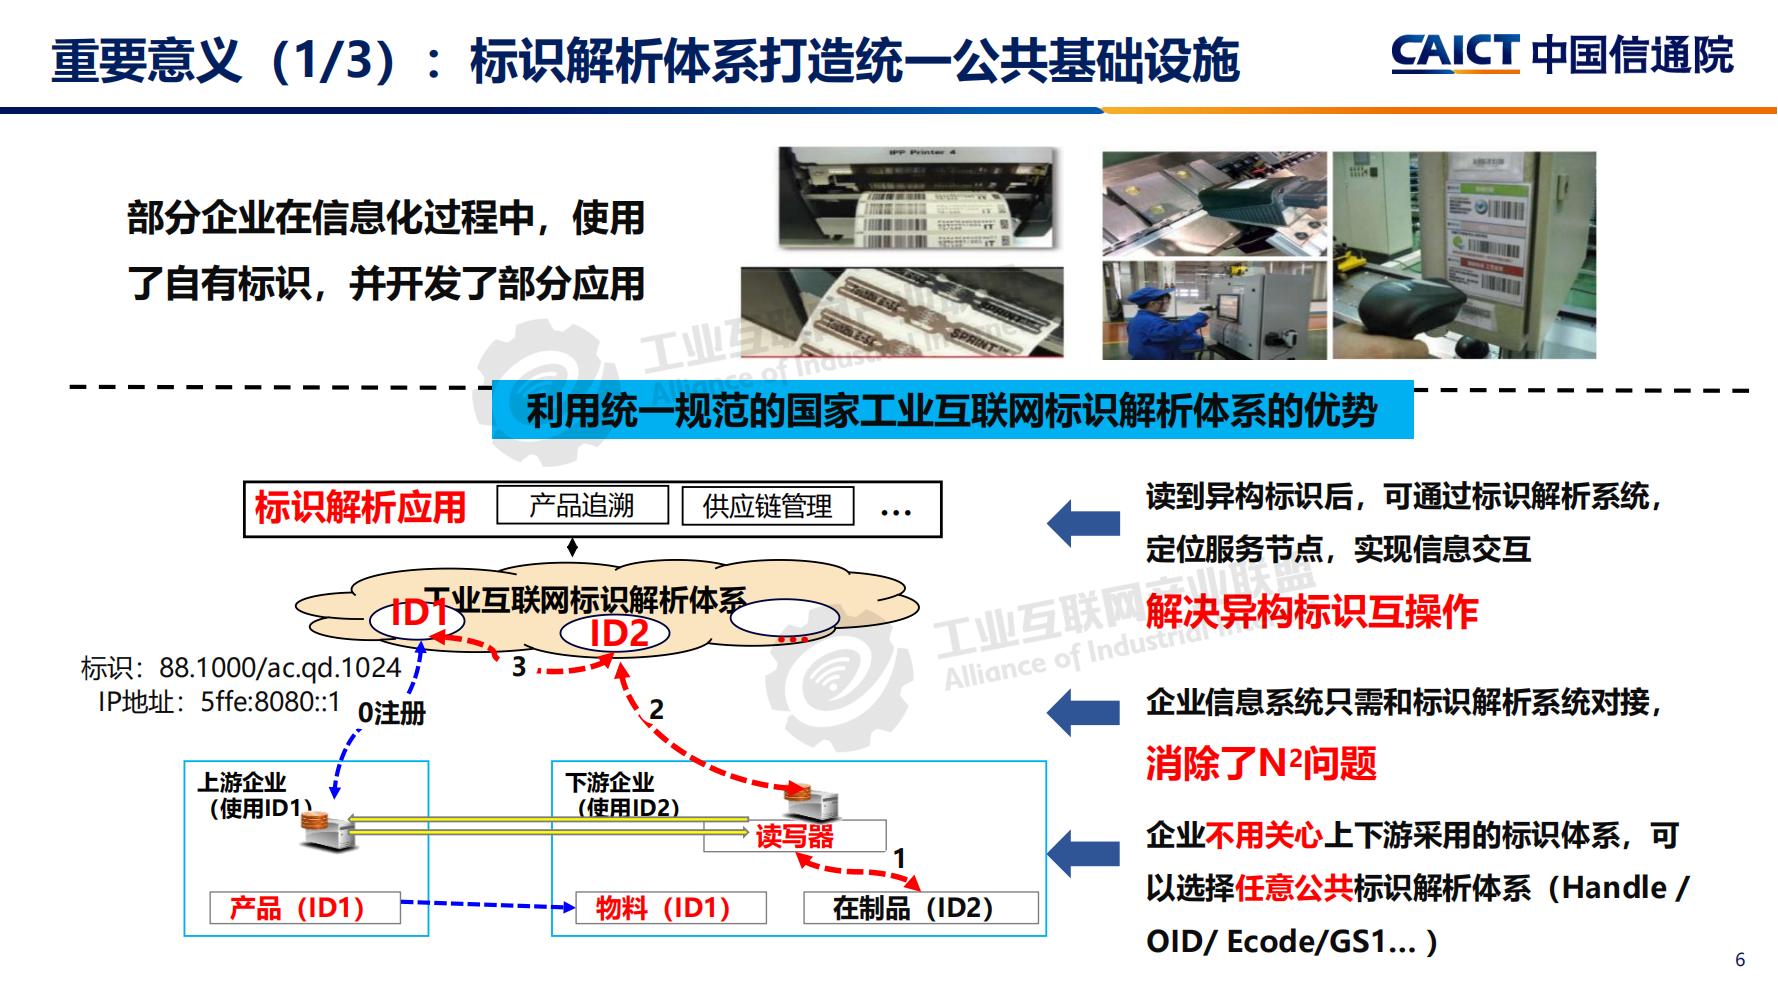 4-betway体育亚洲版入口标识解析体系建设进展（深圳）12-16(1)-水印_05.jpg